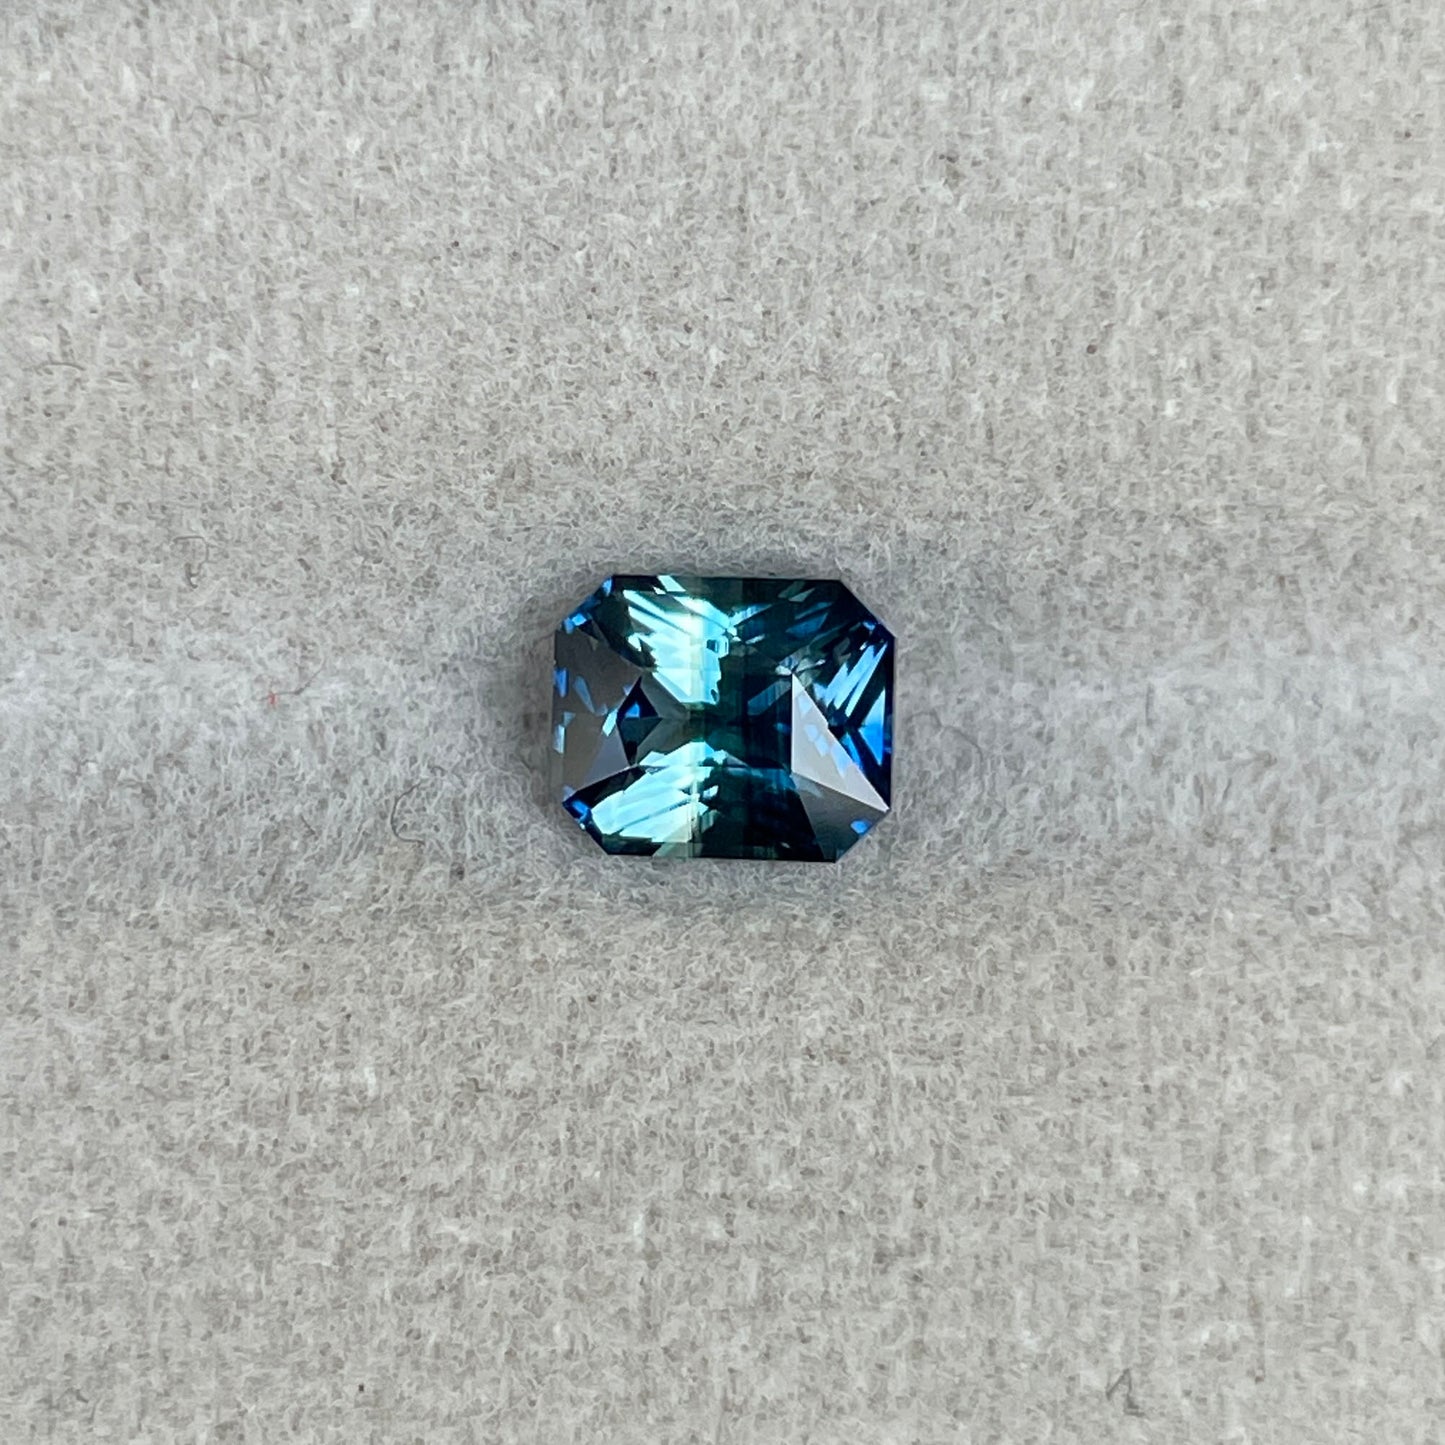 Blueish green sapphire, 1.16 crt